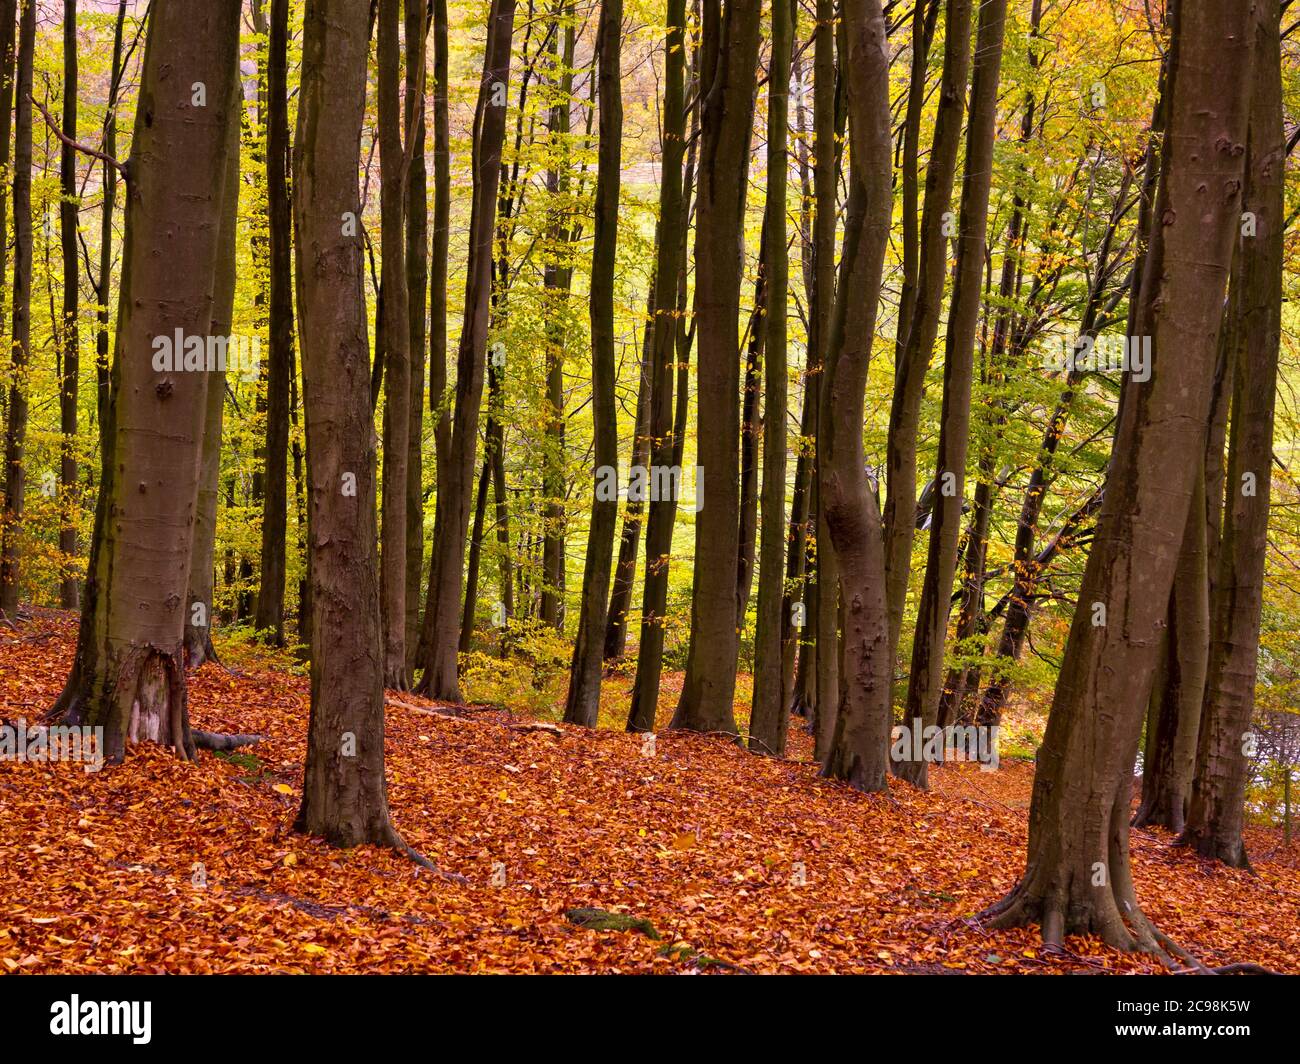 Arbres d'automne dans les bois au réservoir de Linacre près de Chesterfield dans le Derbyshire Peak District Angleterre Royaume-Uni Banque D'Images